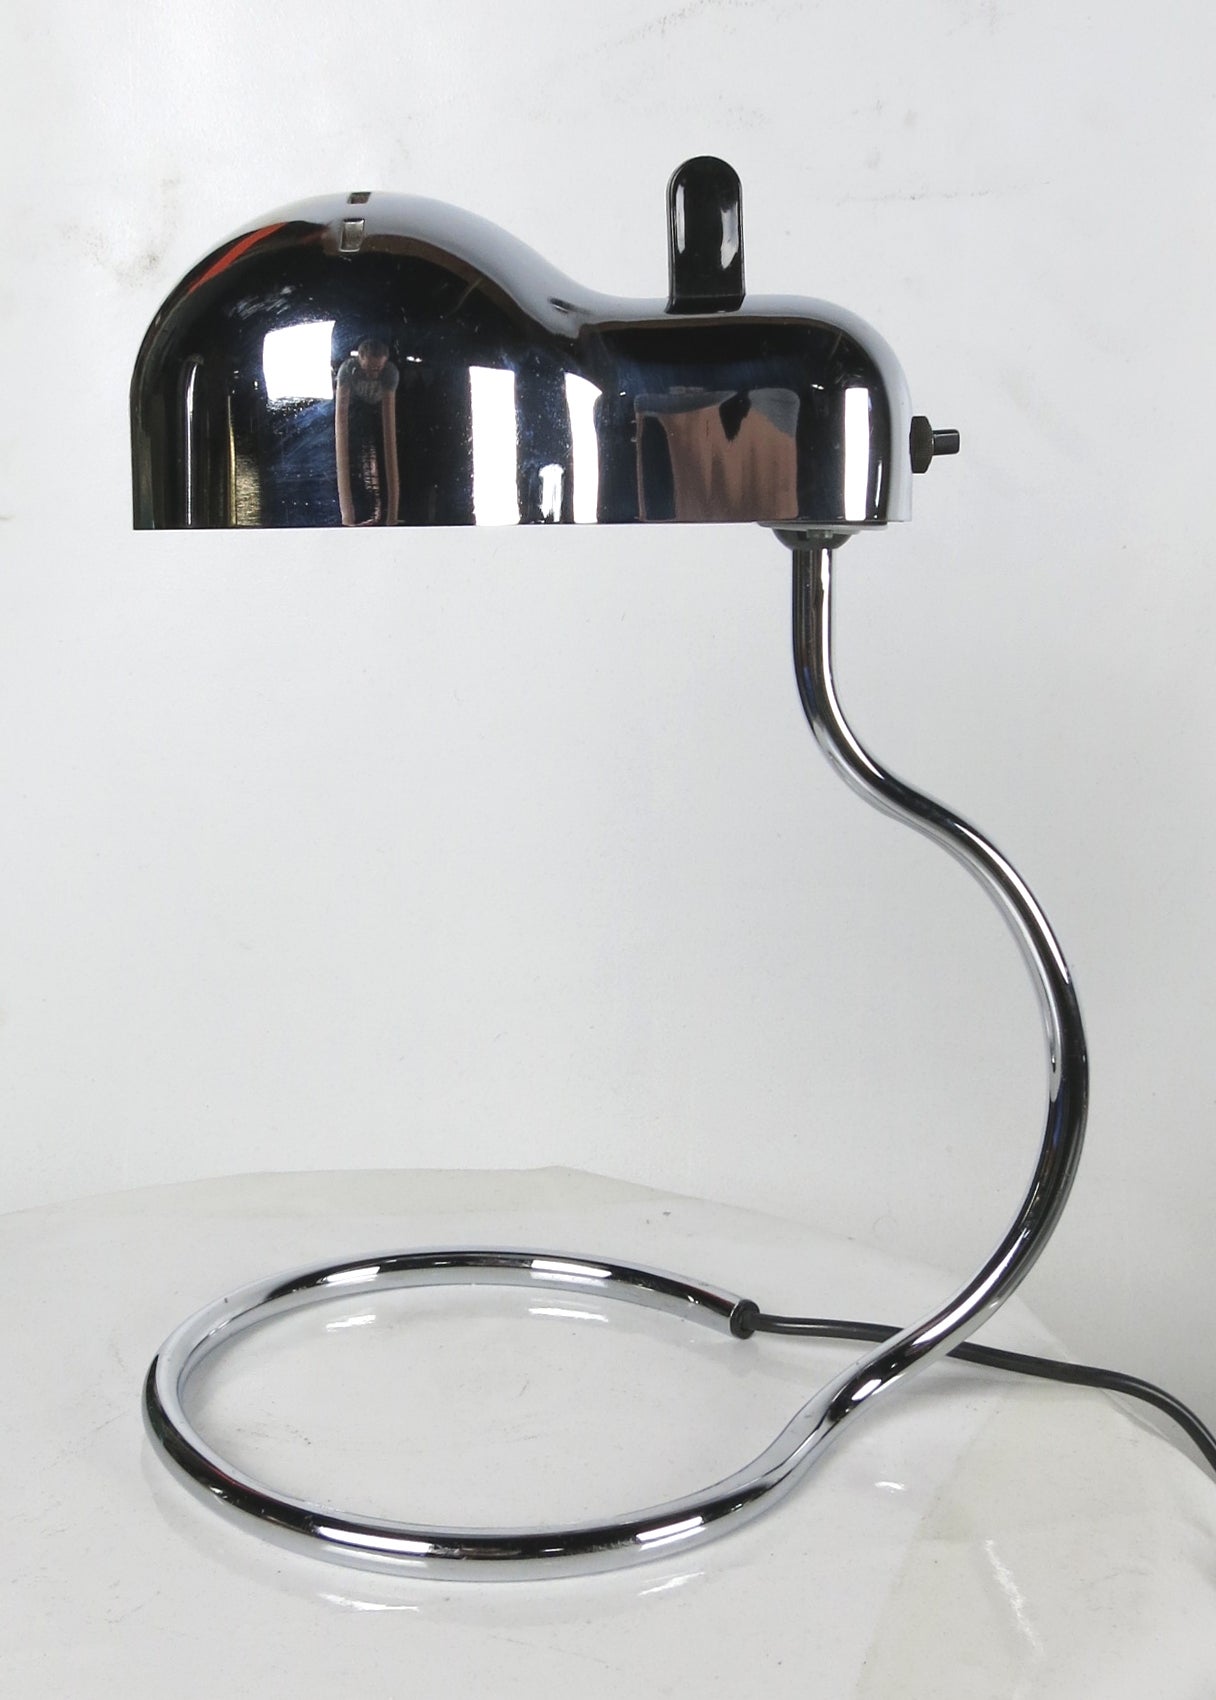 Topo desk lamp by Colombo for Stilnovo.